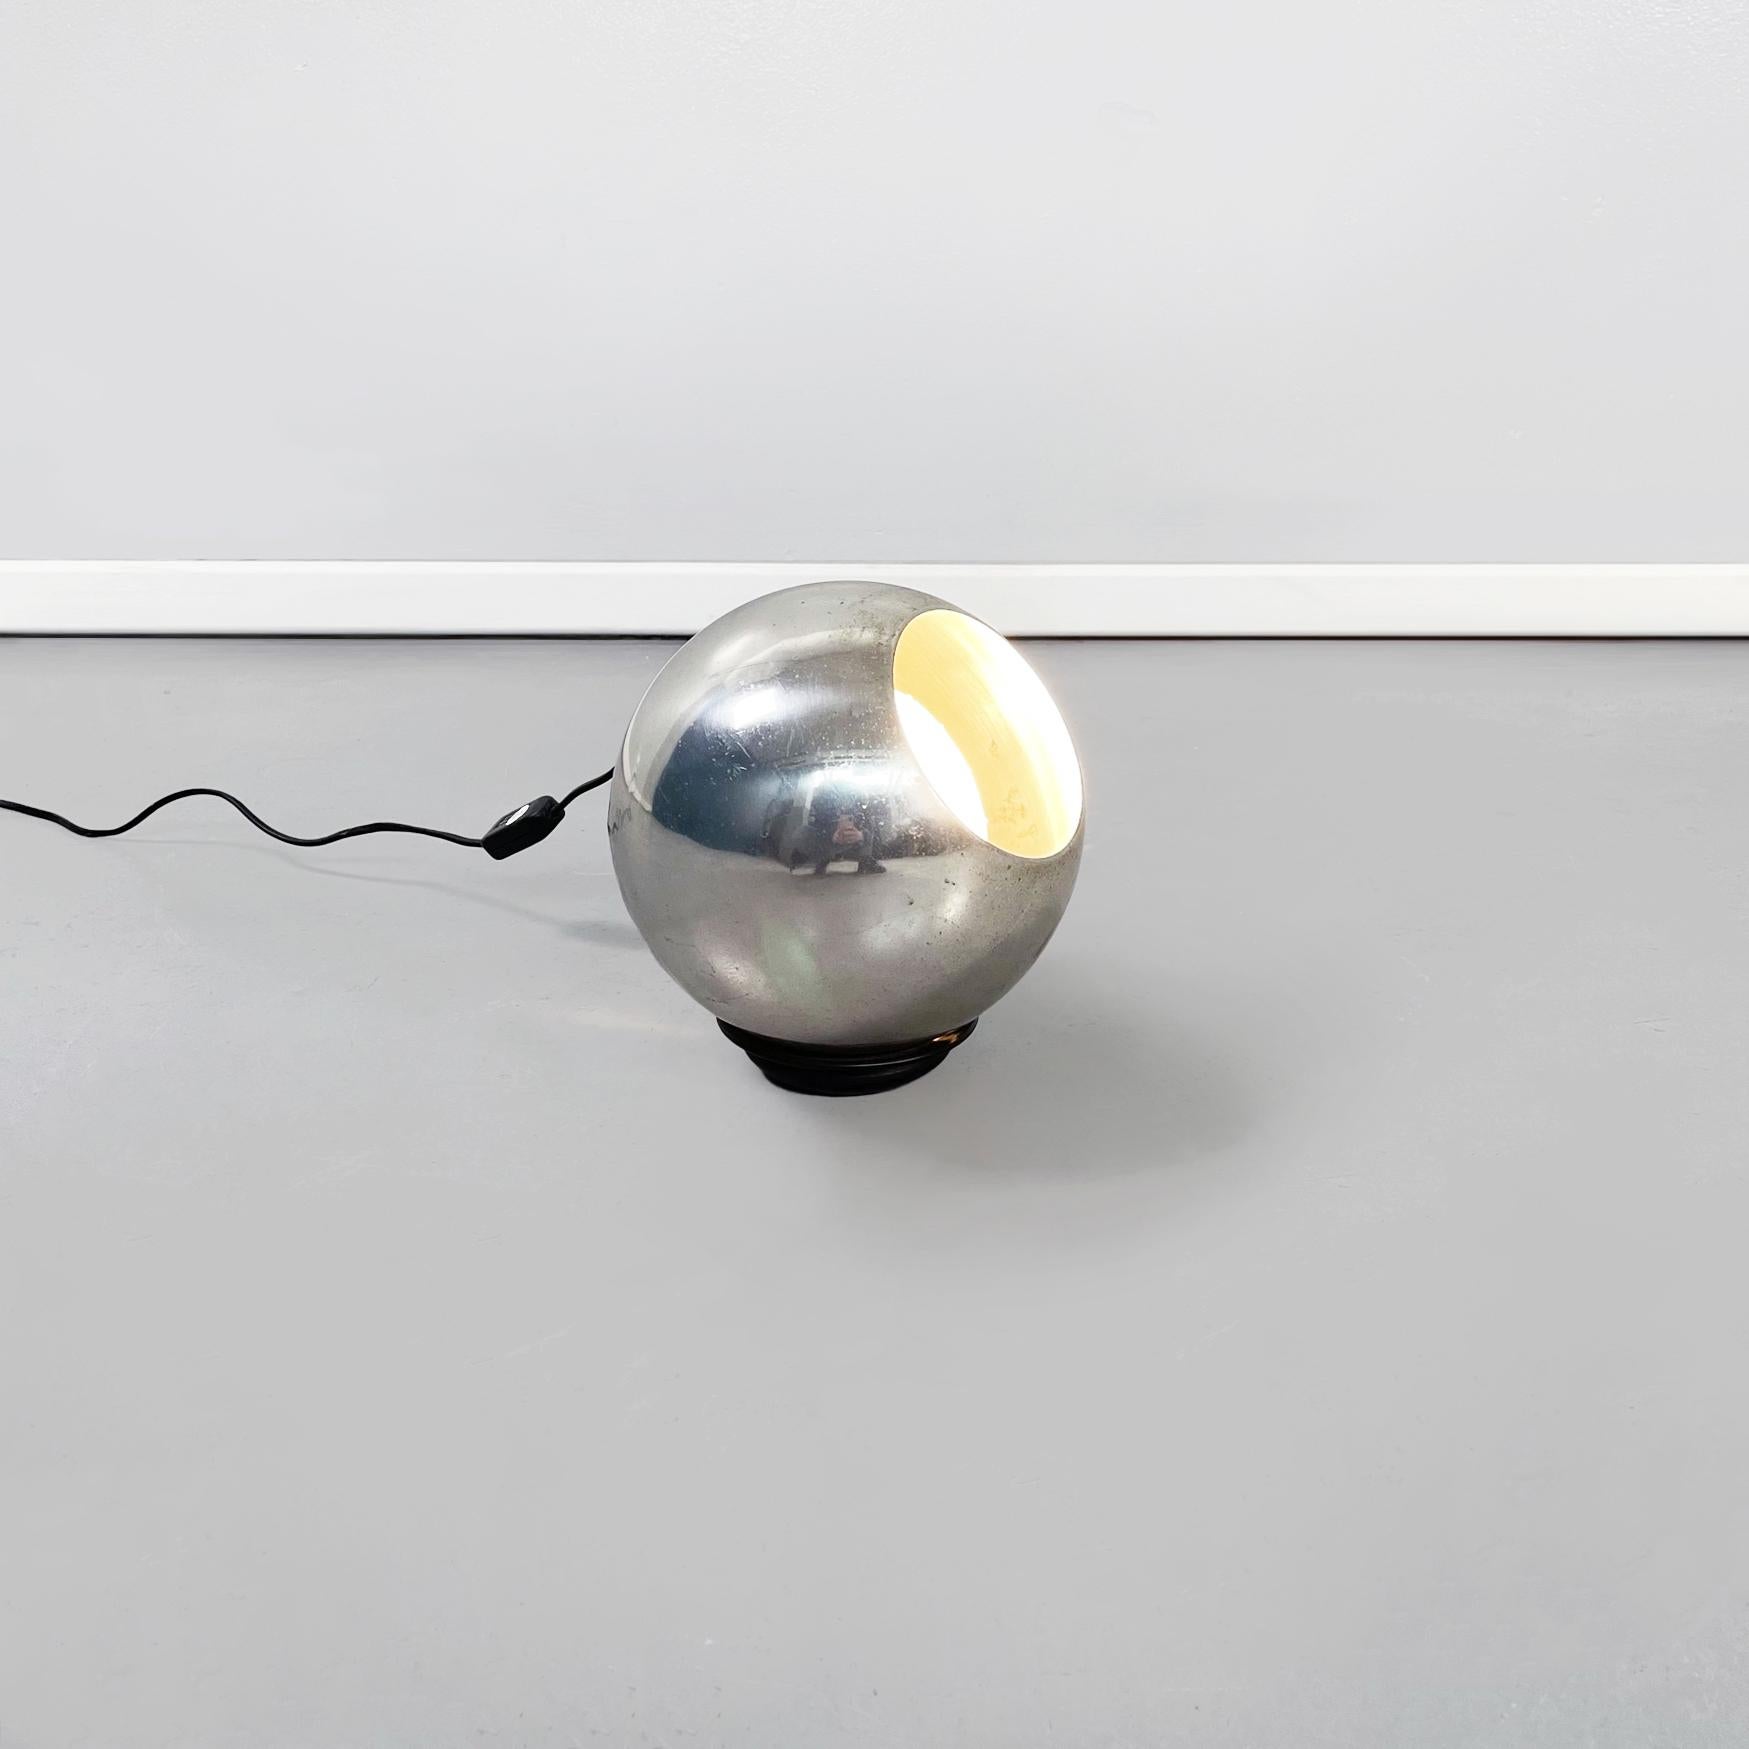 Lampe de table italienne en aluminium du milieu du siècle 586 par Gino Sarfatti pour Arteluce, années 1960
Lampe de table modèle 586 avec une base circulaire en aluminium noir sur laquelle est placée une sphère en aluminium poli dans laquelle se